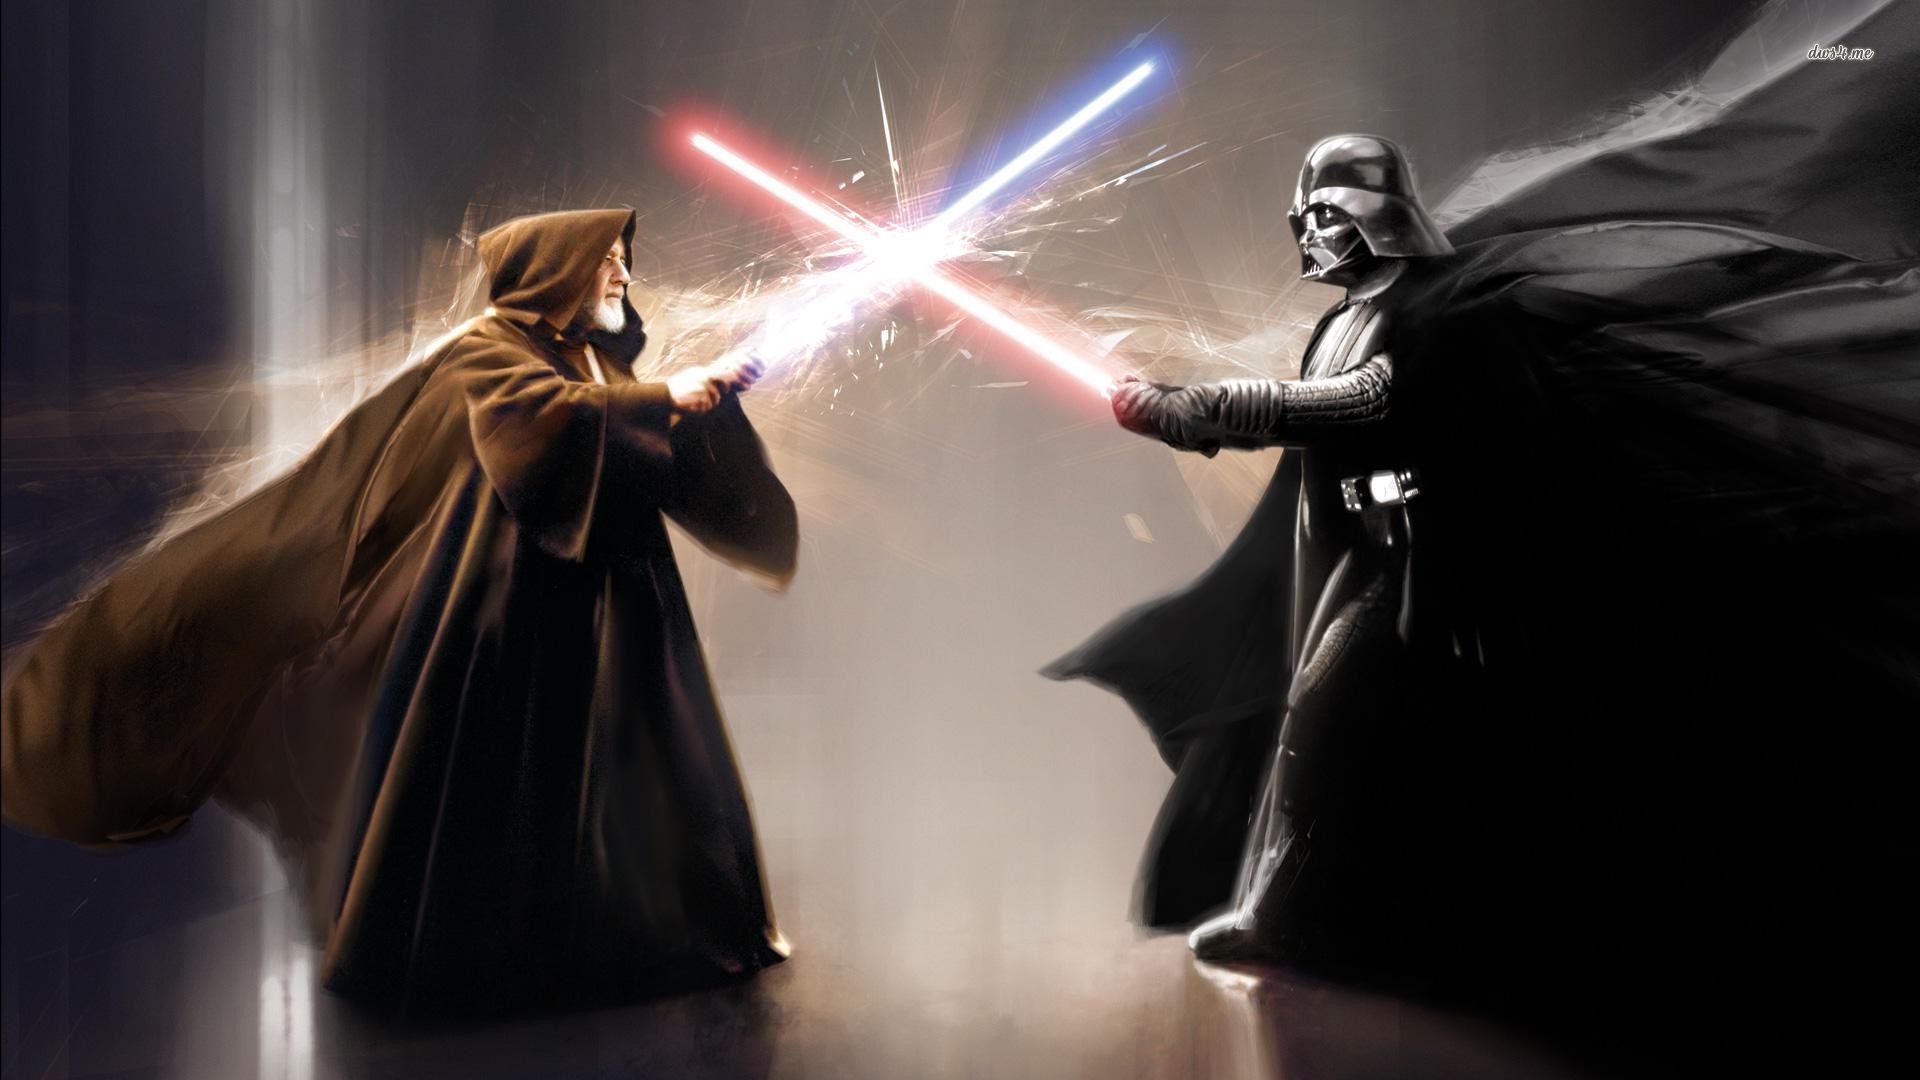 Kenobi vs Vader. Star wars wallpaper, Star wars, Darth vader